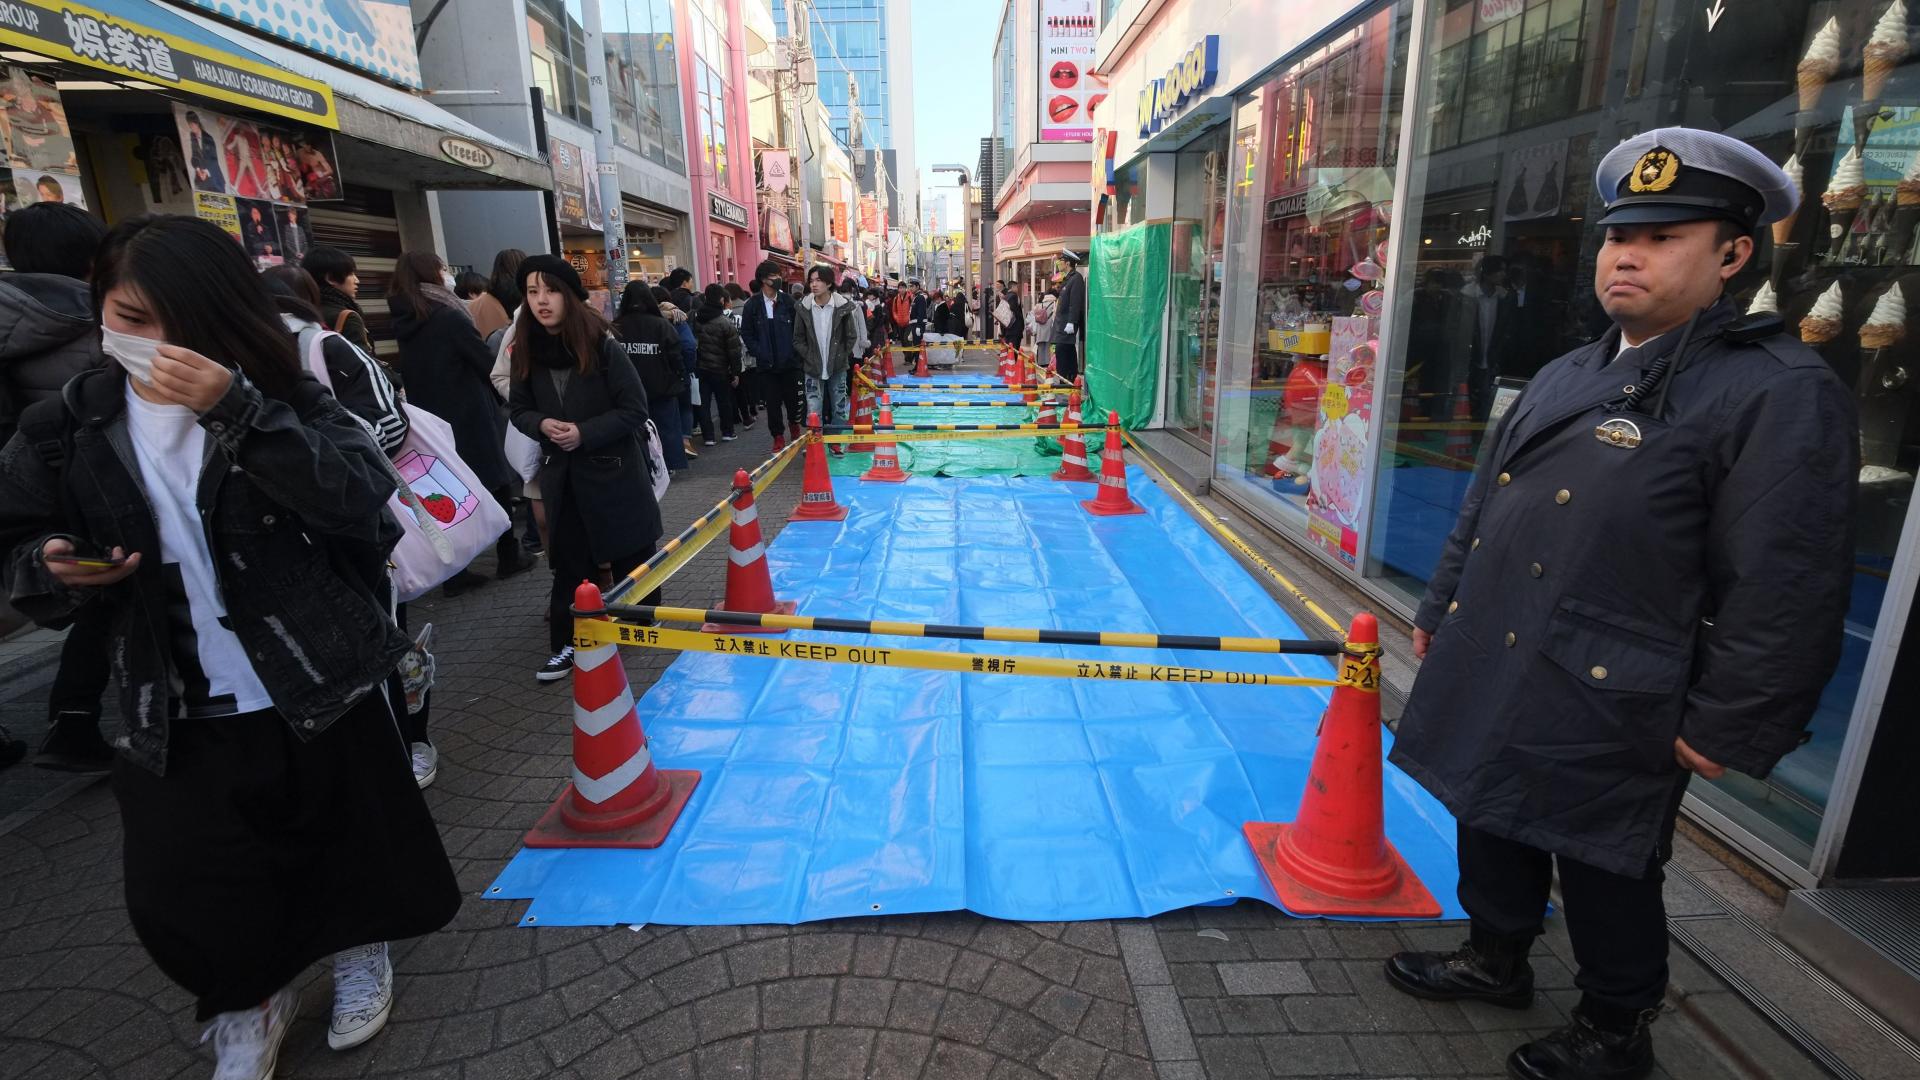 اليابان: إصابة 9 بحادث “دهس متعمد” برأس السنة والمشتبه به يغيّر افادته